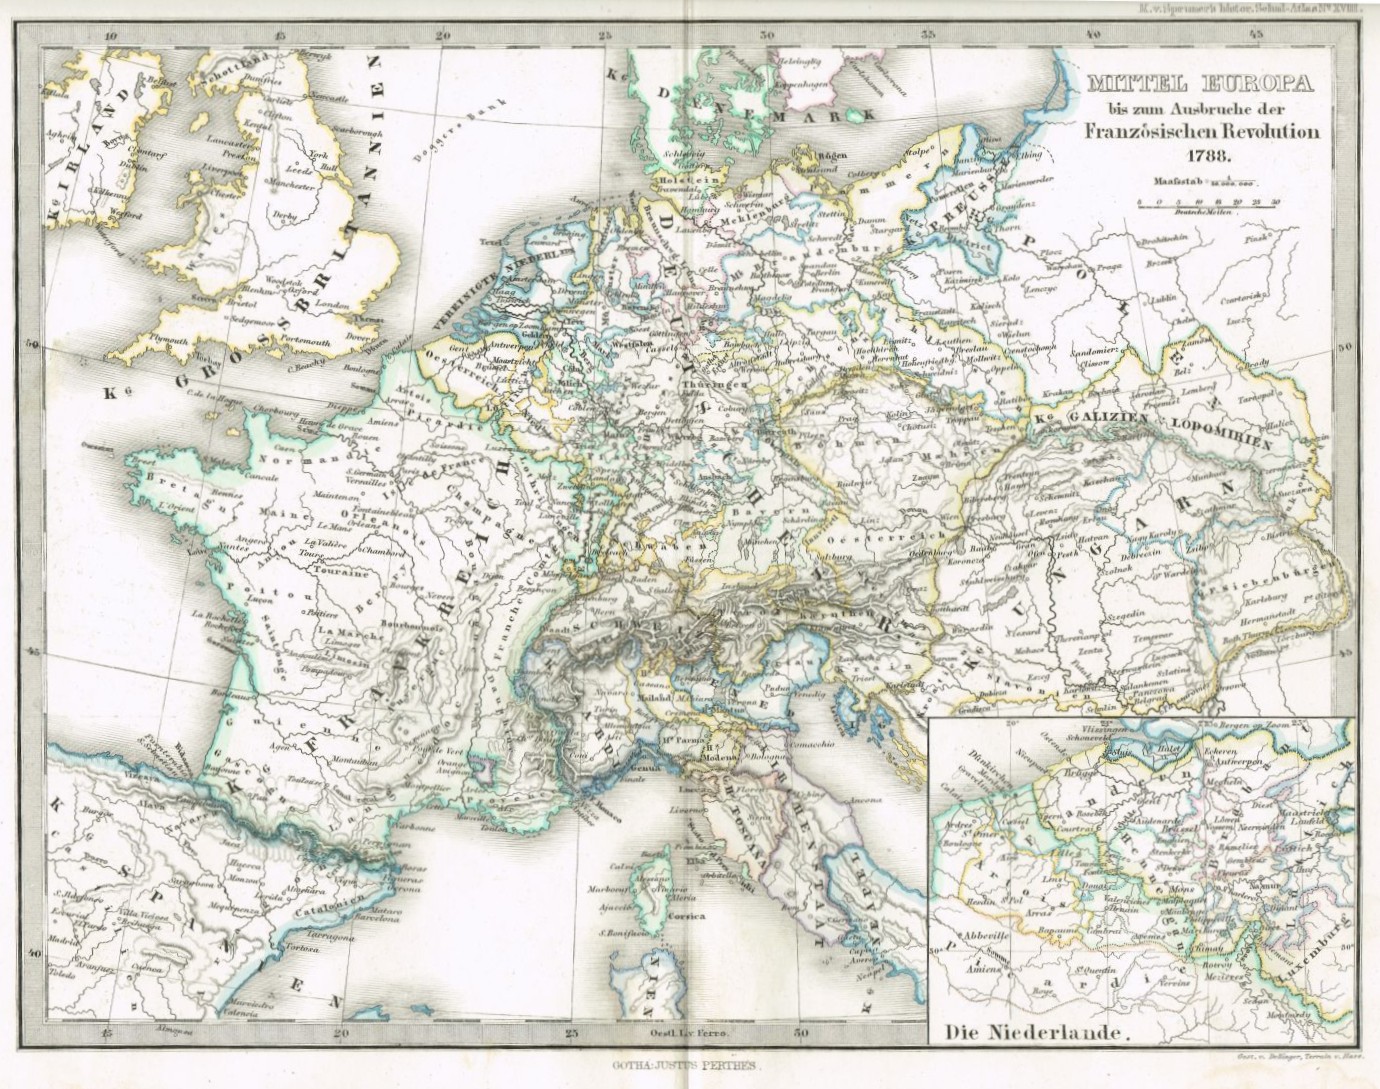 Mitteleuropa bis zum Ausbruch der Französischen Revolution 1788 (Winckelmann-Museum Stendal CC BY-NC-SA)